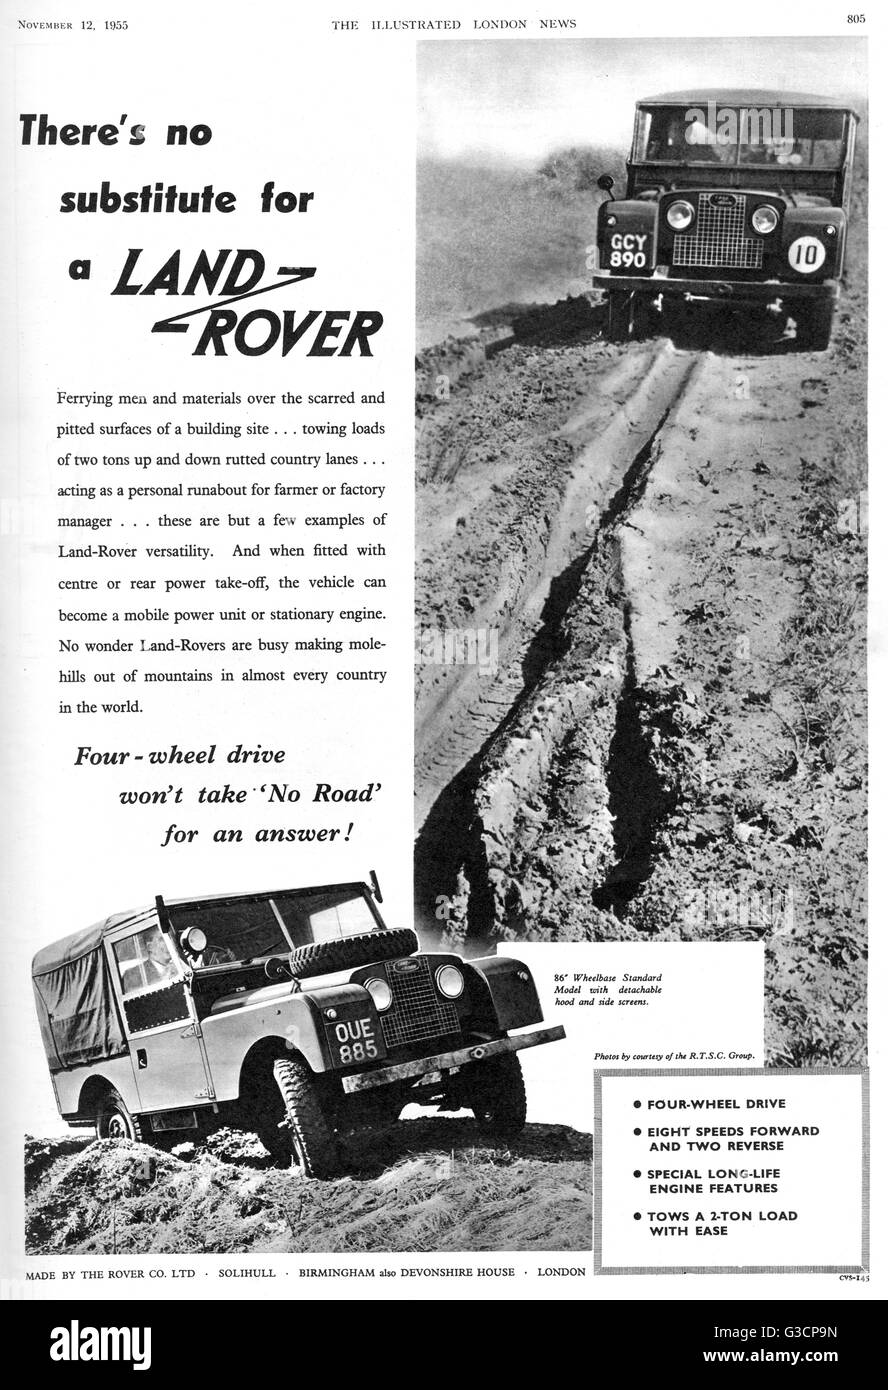 Werbung für Land Rover, der britische Allrad-Antrieb, Langlauf, Off-Road-Fahrzeug.      Datum: 1955 Stockfoto